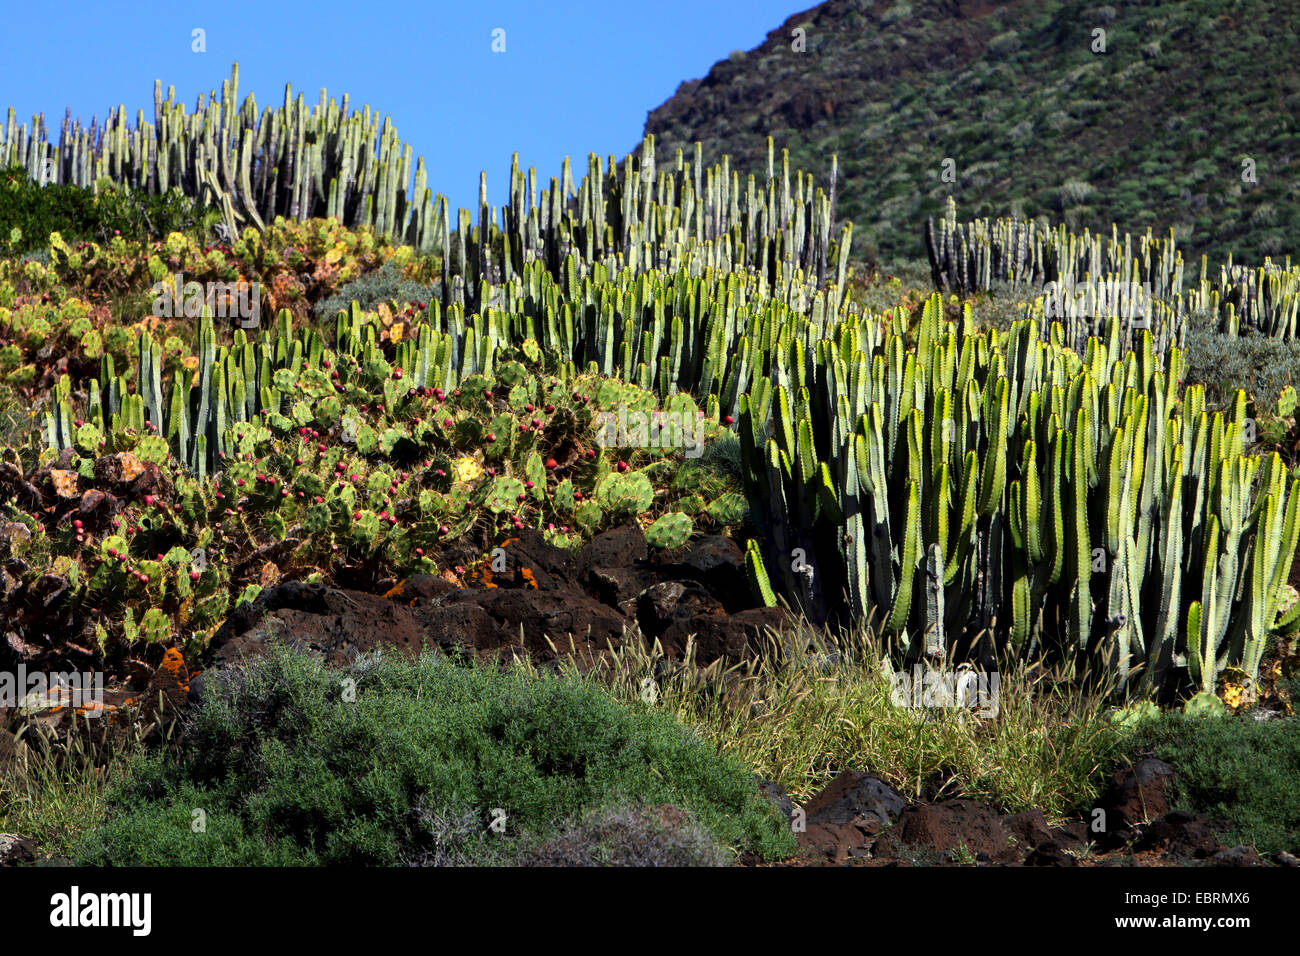 Islas Canarias expurgo (Euphorbia canariensis), típica vegegation con Opuncias y expurgo de las Islas Canarias, Islas Canarias, Tenerife, Punta de Teno, Buenavista del Norte Foto de stock